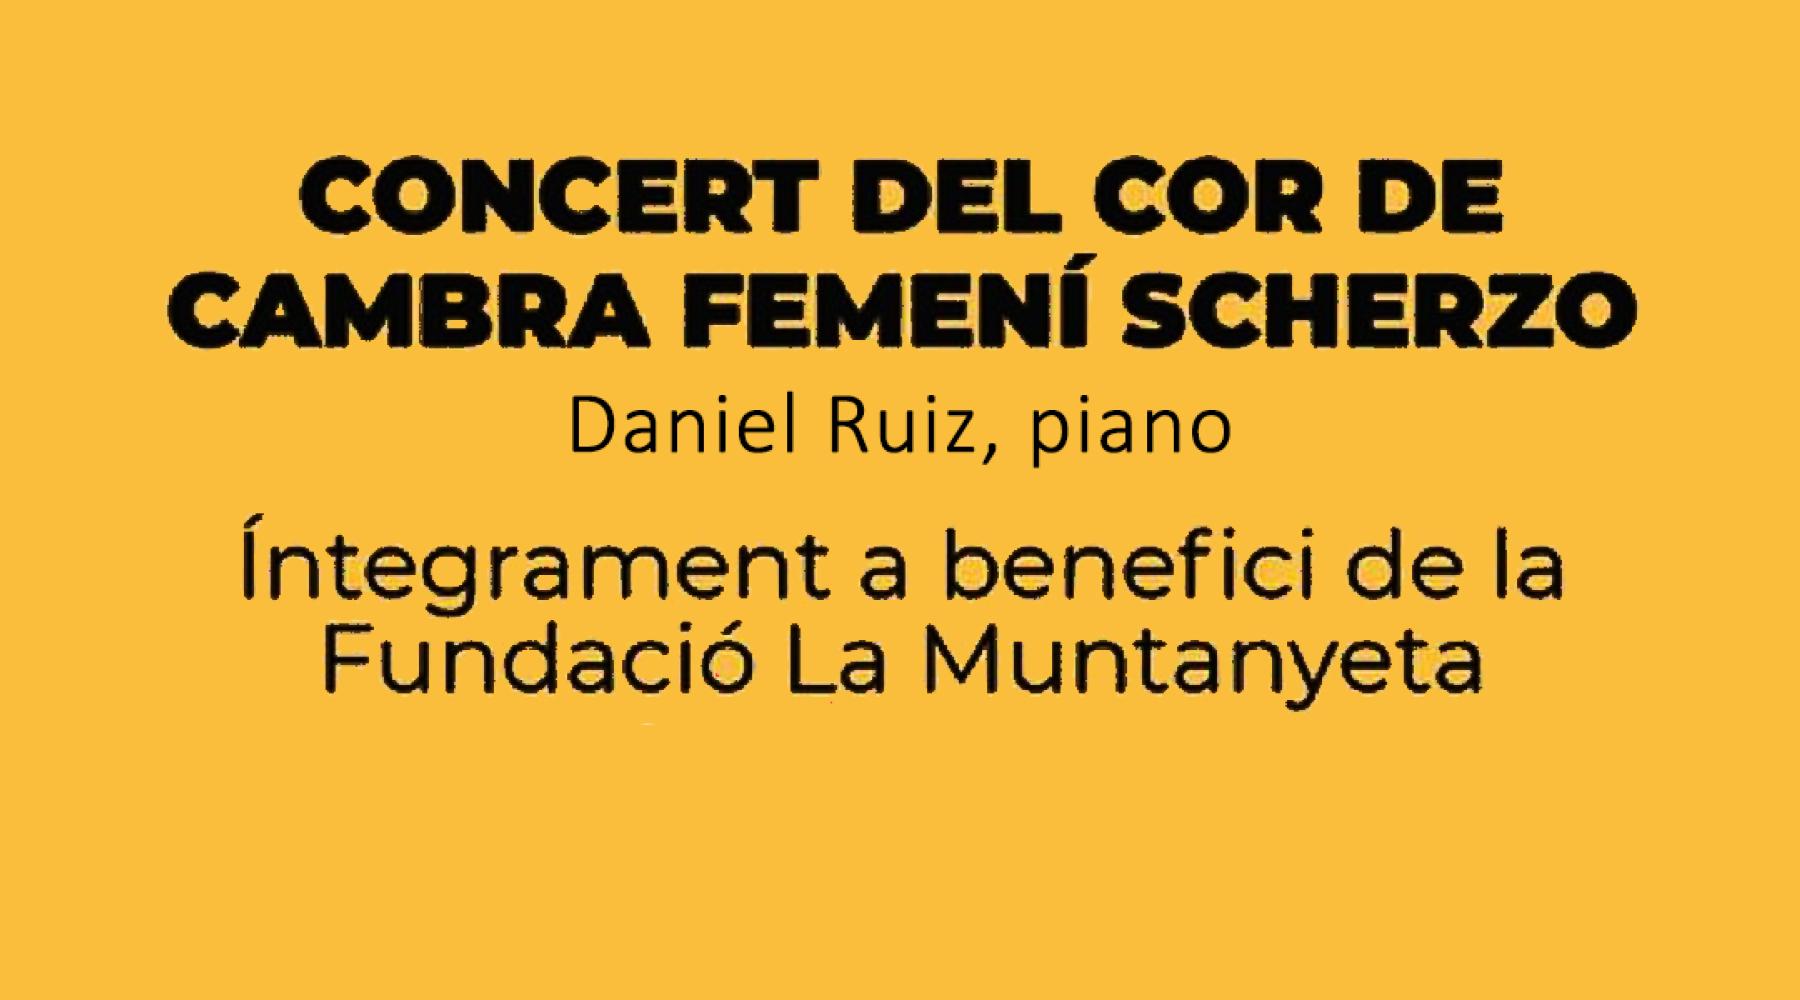 Concert del Cor SCHERZO a benefici de la Fundació La Muntanyeta